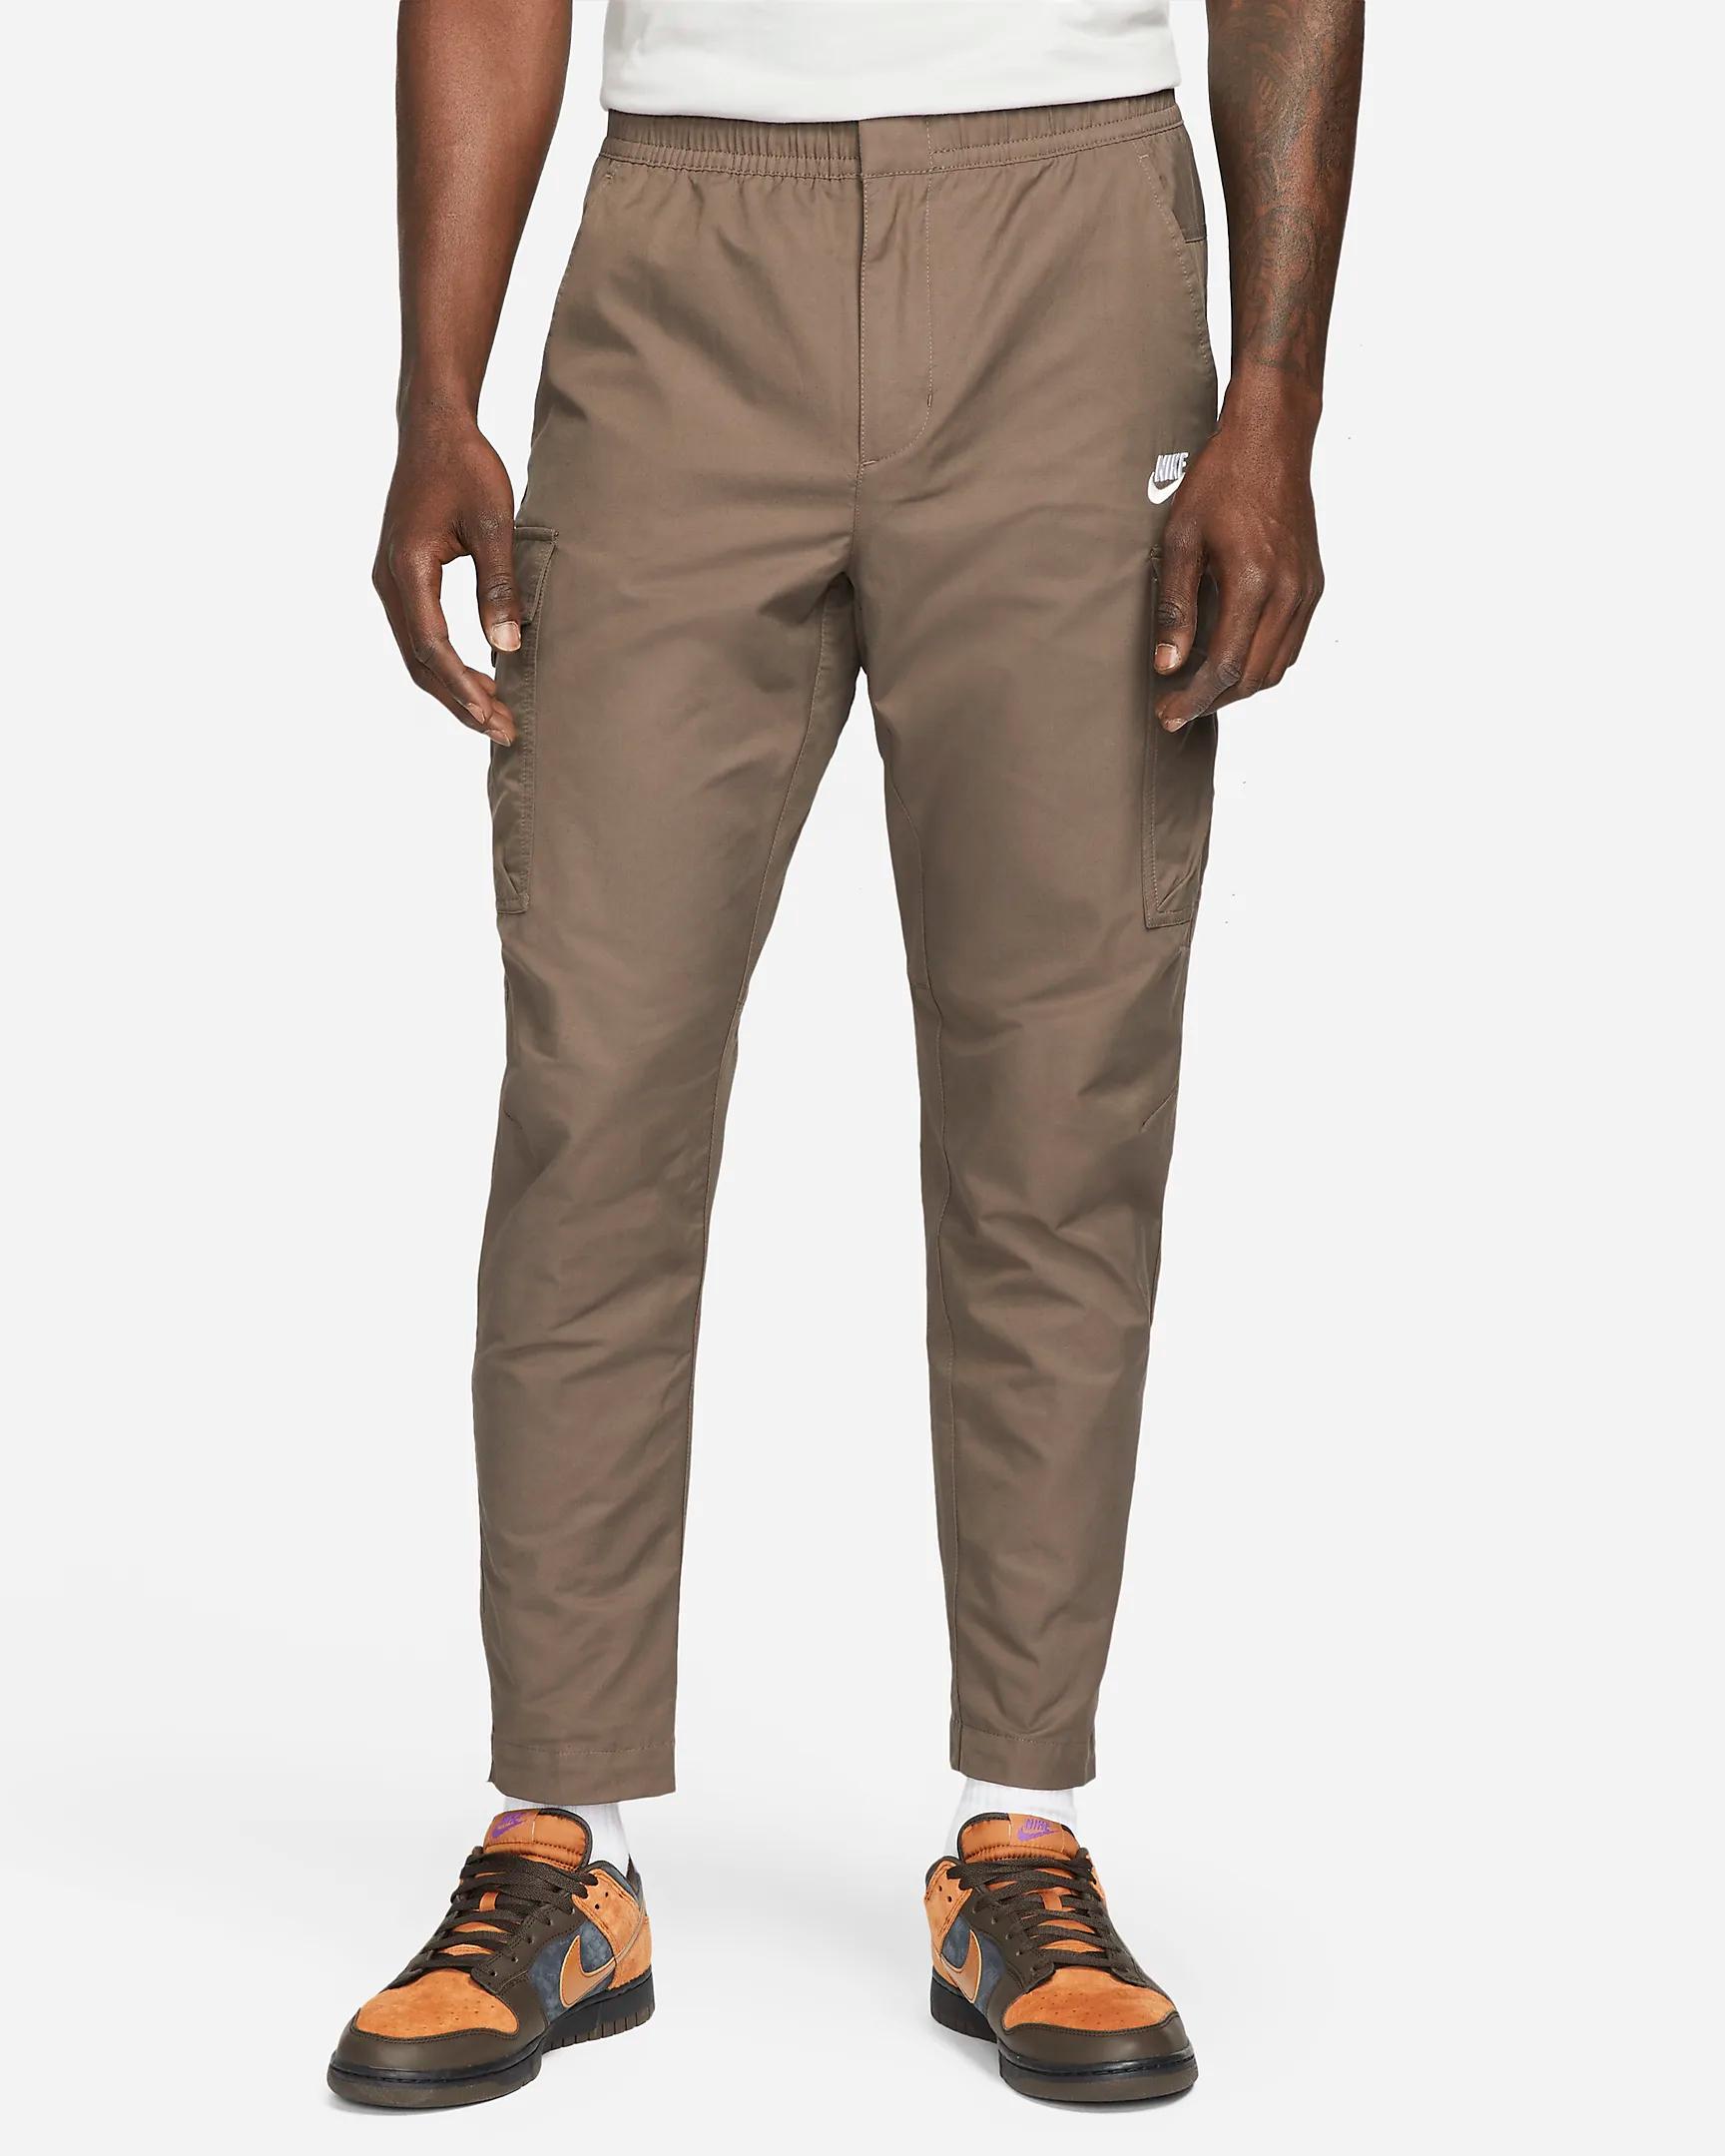 Nike Sportswear Utility Cargo Pants for Men | Lyst